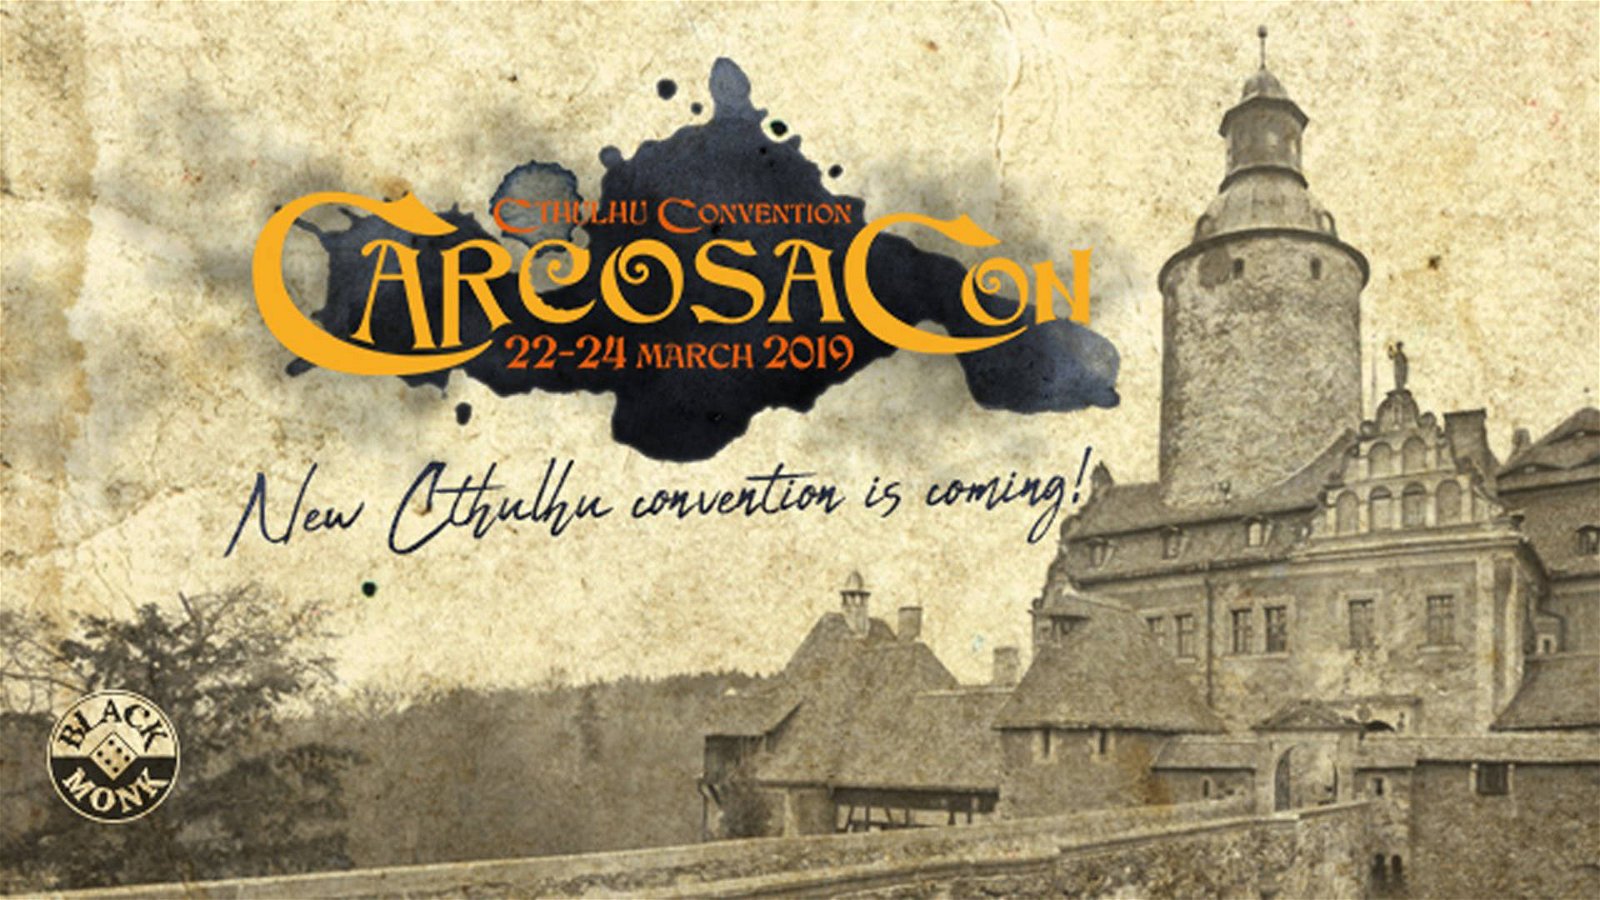 Immagine di CarcosaCon: arriva la convention per gli appassionati di Lovecraft